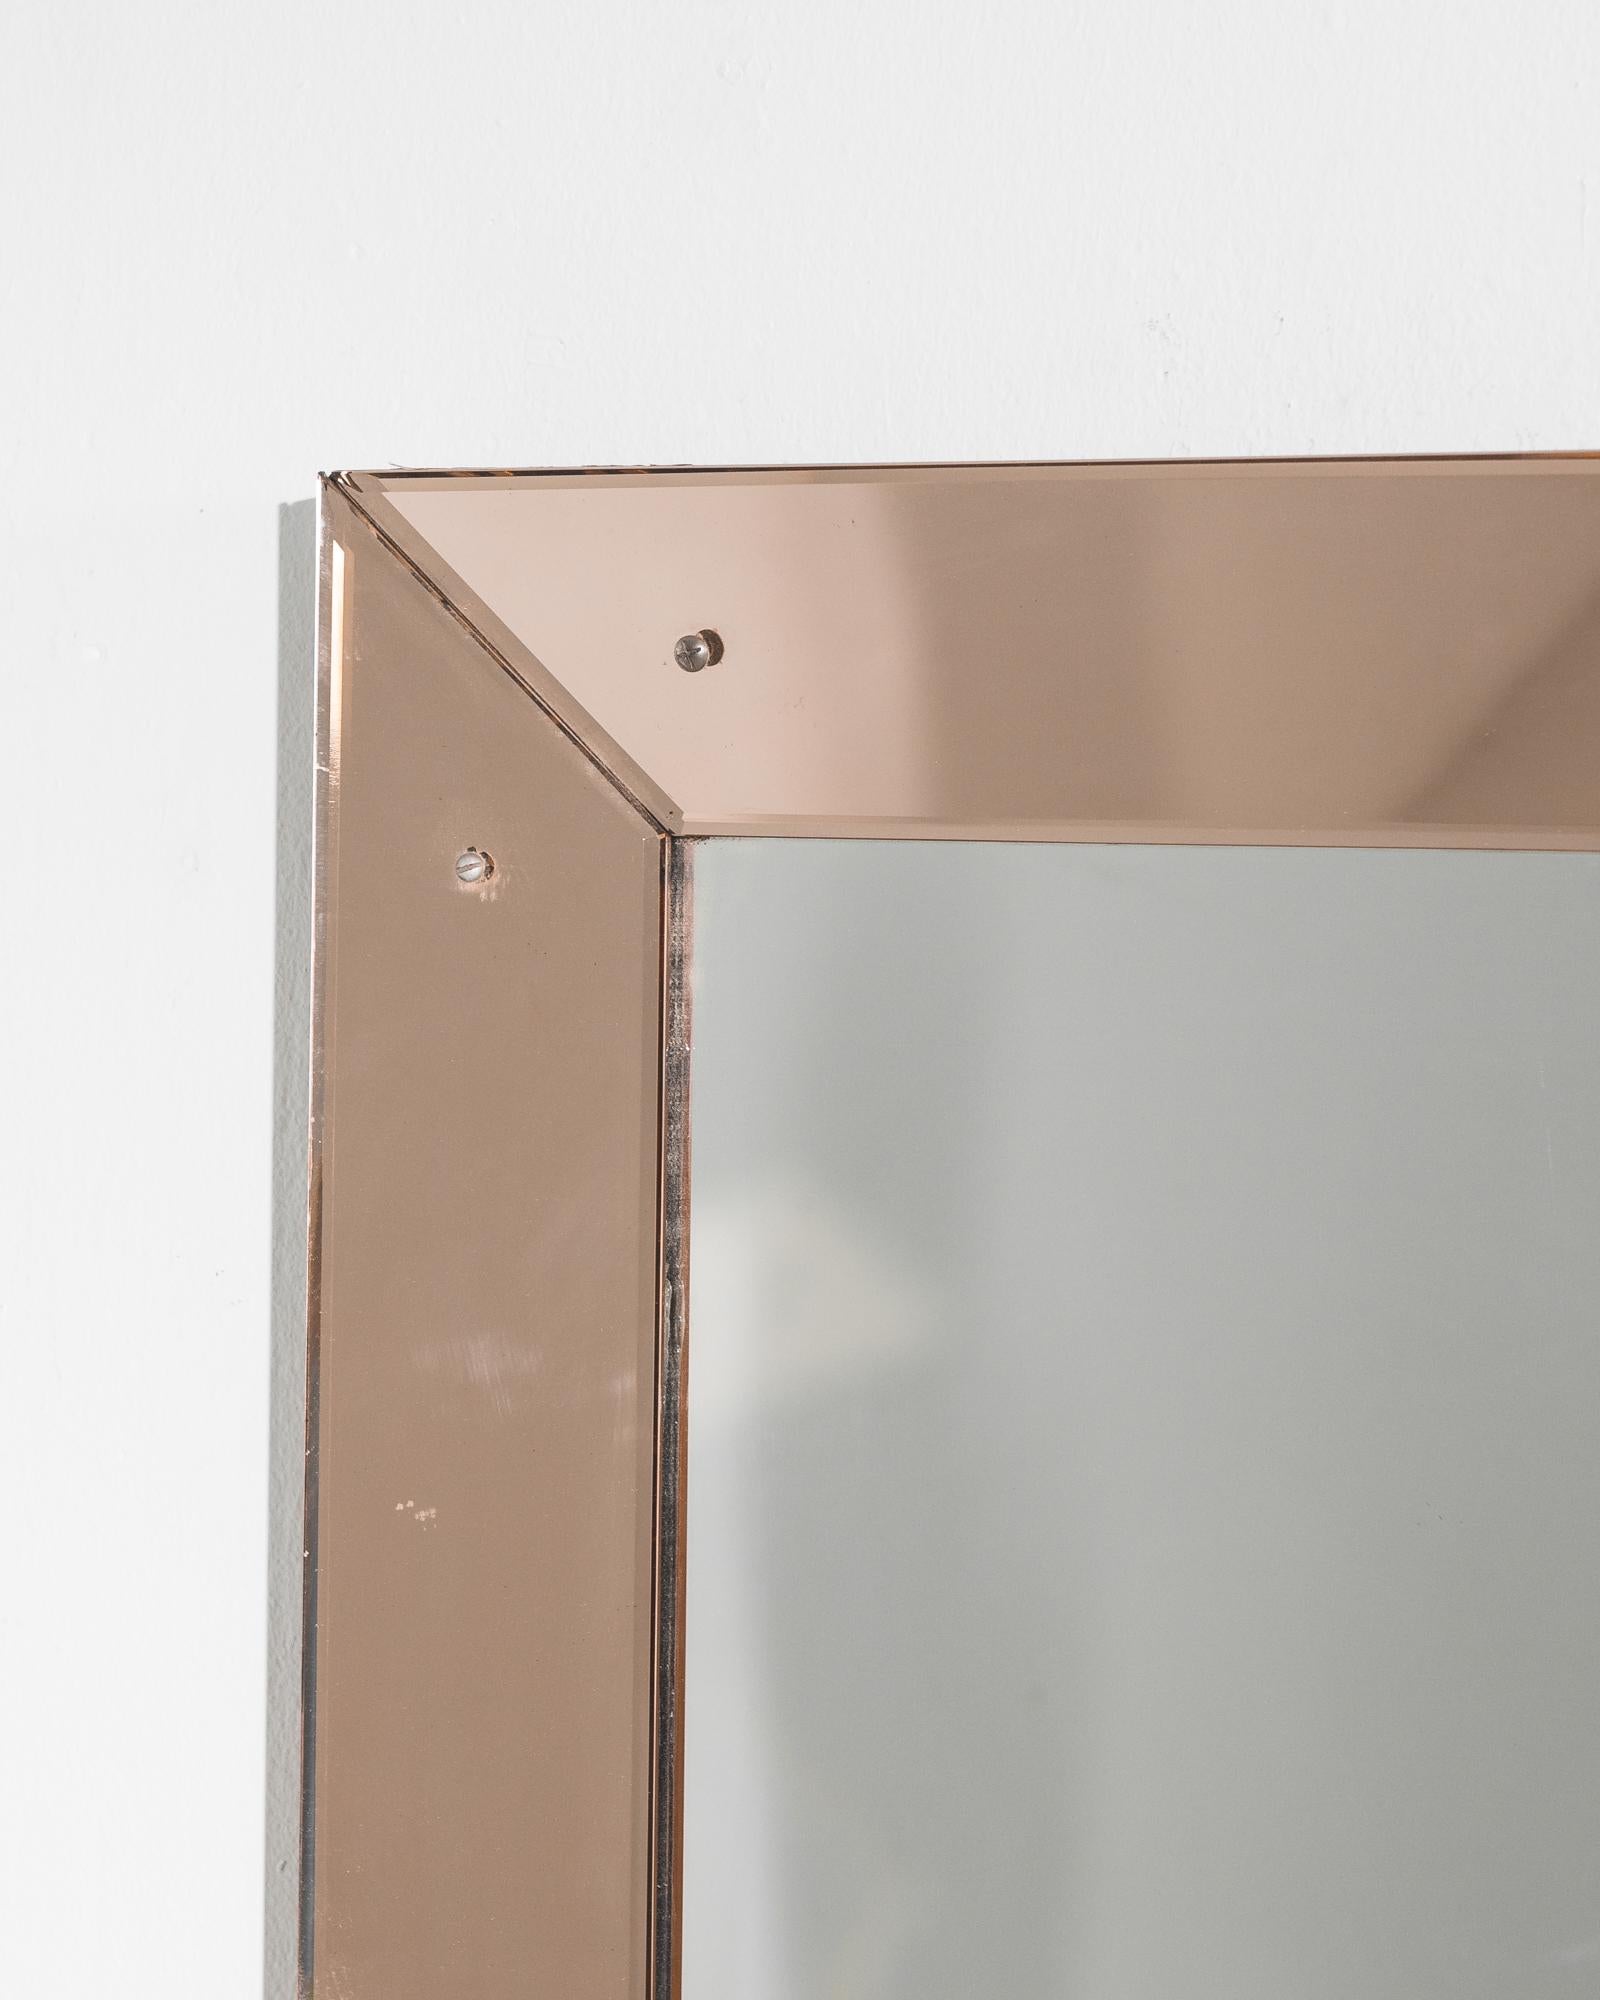 Ce miroir avec cadre en verre a été fabriqué en Italie, vers 1930. Mis à jour avec un nouveau miroir dans notre atelier, le cadre biseauté affiche une élégante teinte rose et une brillance immaculée. La netteté des lignes témoigne du glamour et du